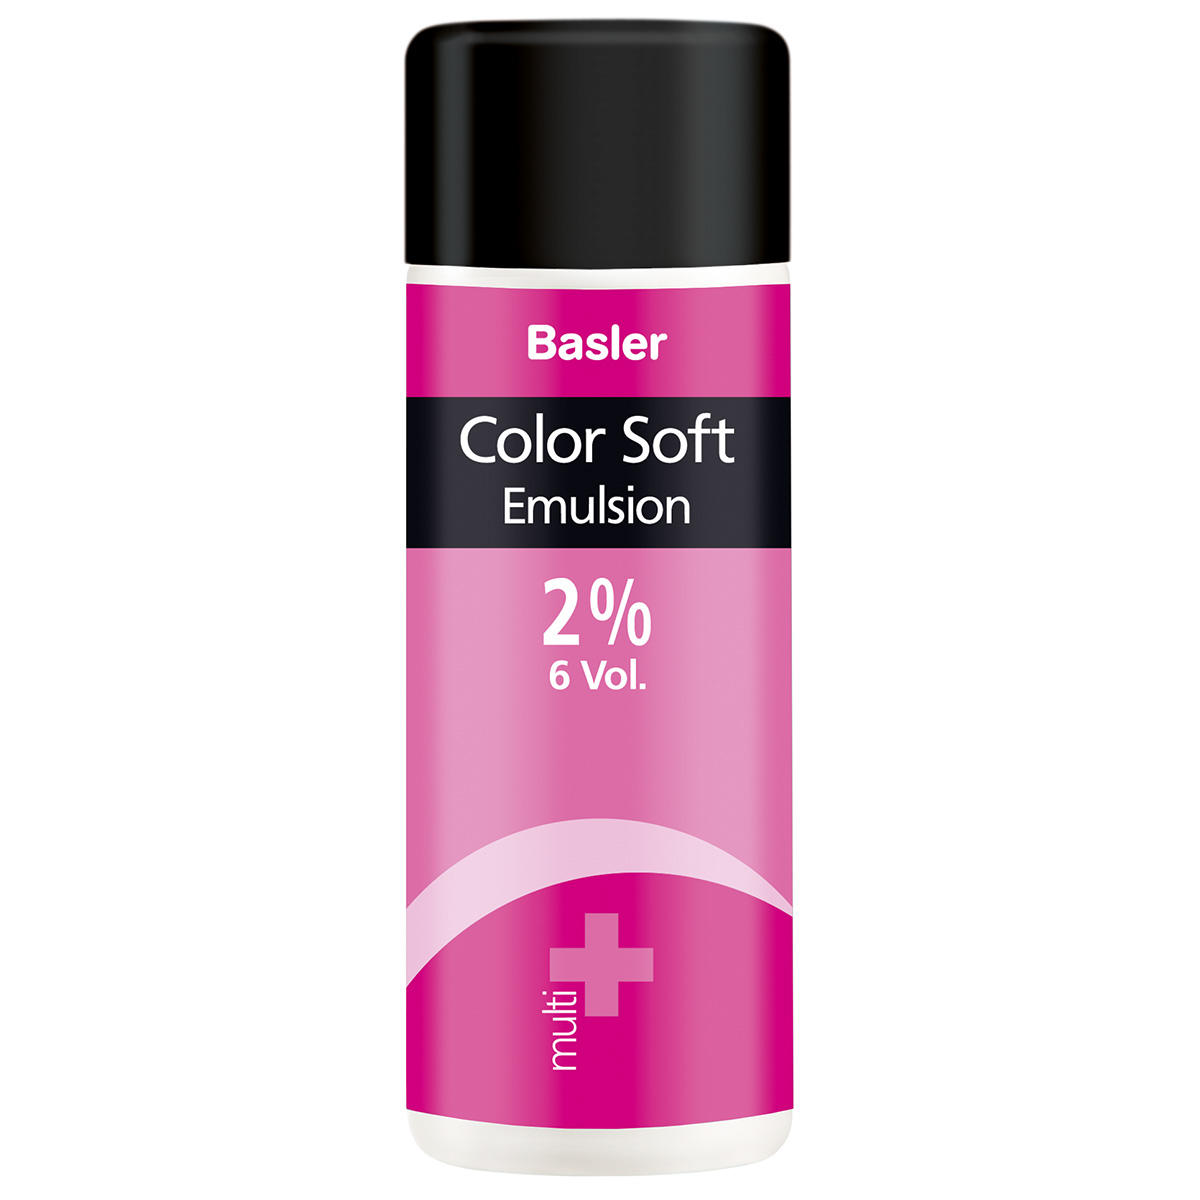 Basler Color Soft multi Emulsion 2 % - 7 vol., bottle 200 ml - 1